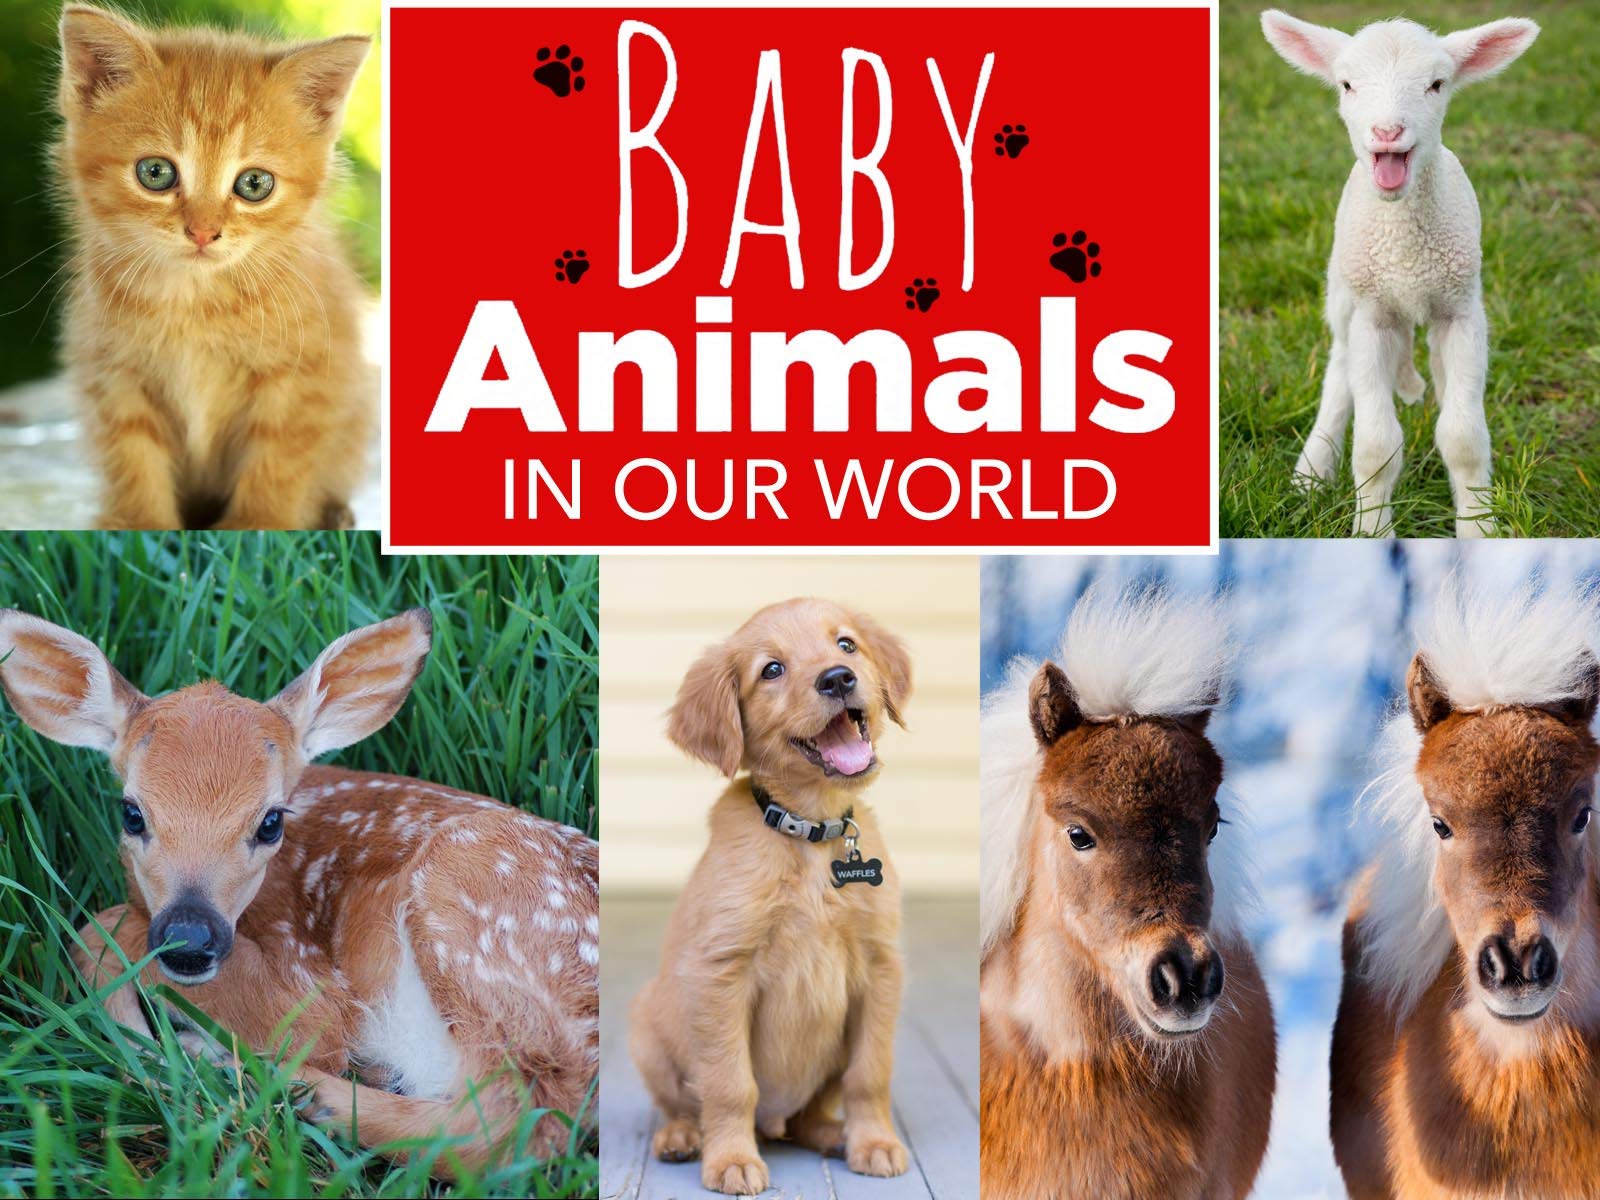 Caratula de Baby Animals in Our World (Animales bebé en nuestro mundo) 